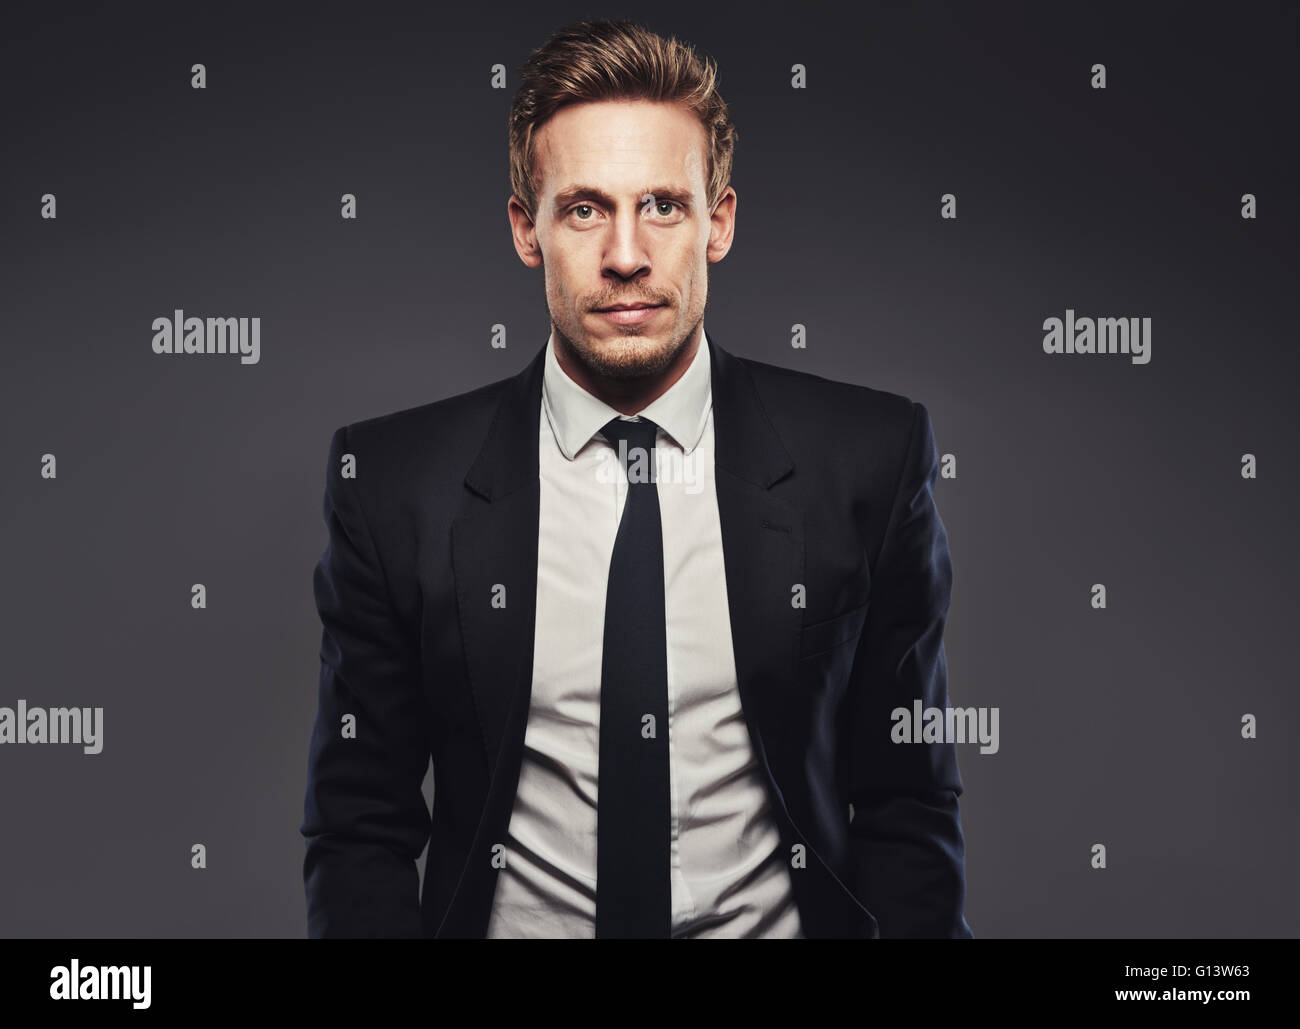 Porträt der schönen Business-Mann im dunklen Anzug vor einem grauen Hintergrund Stockfoto